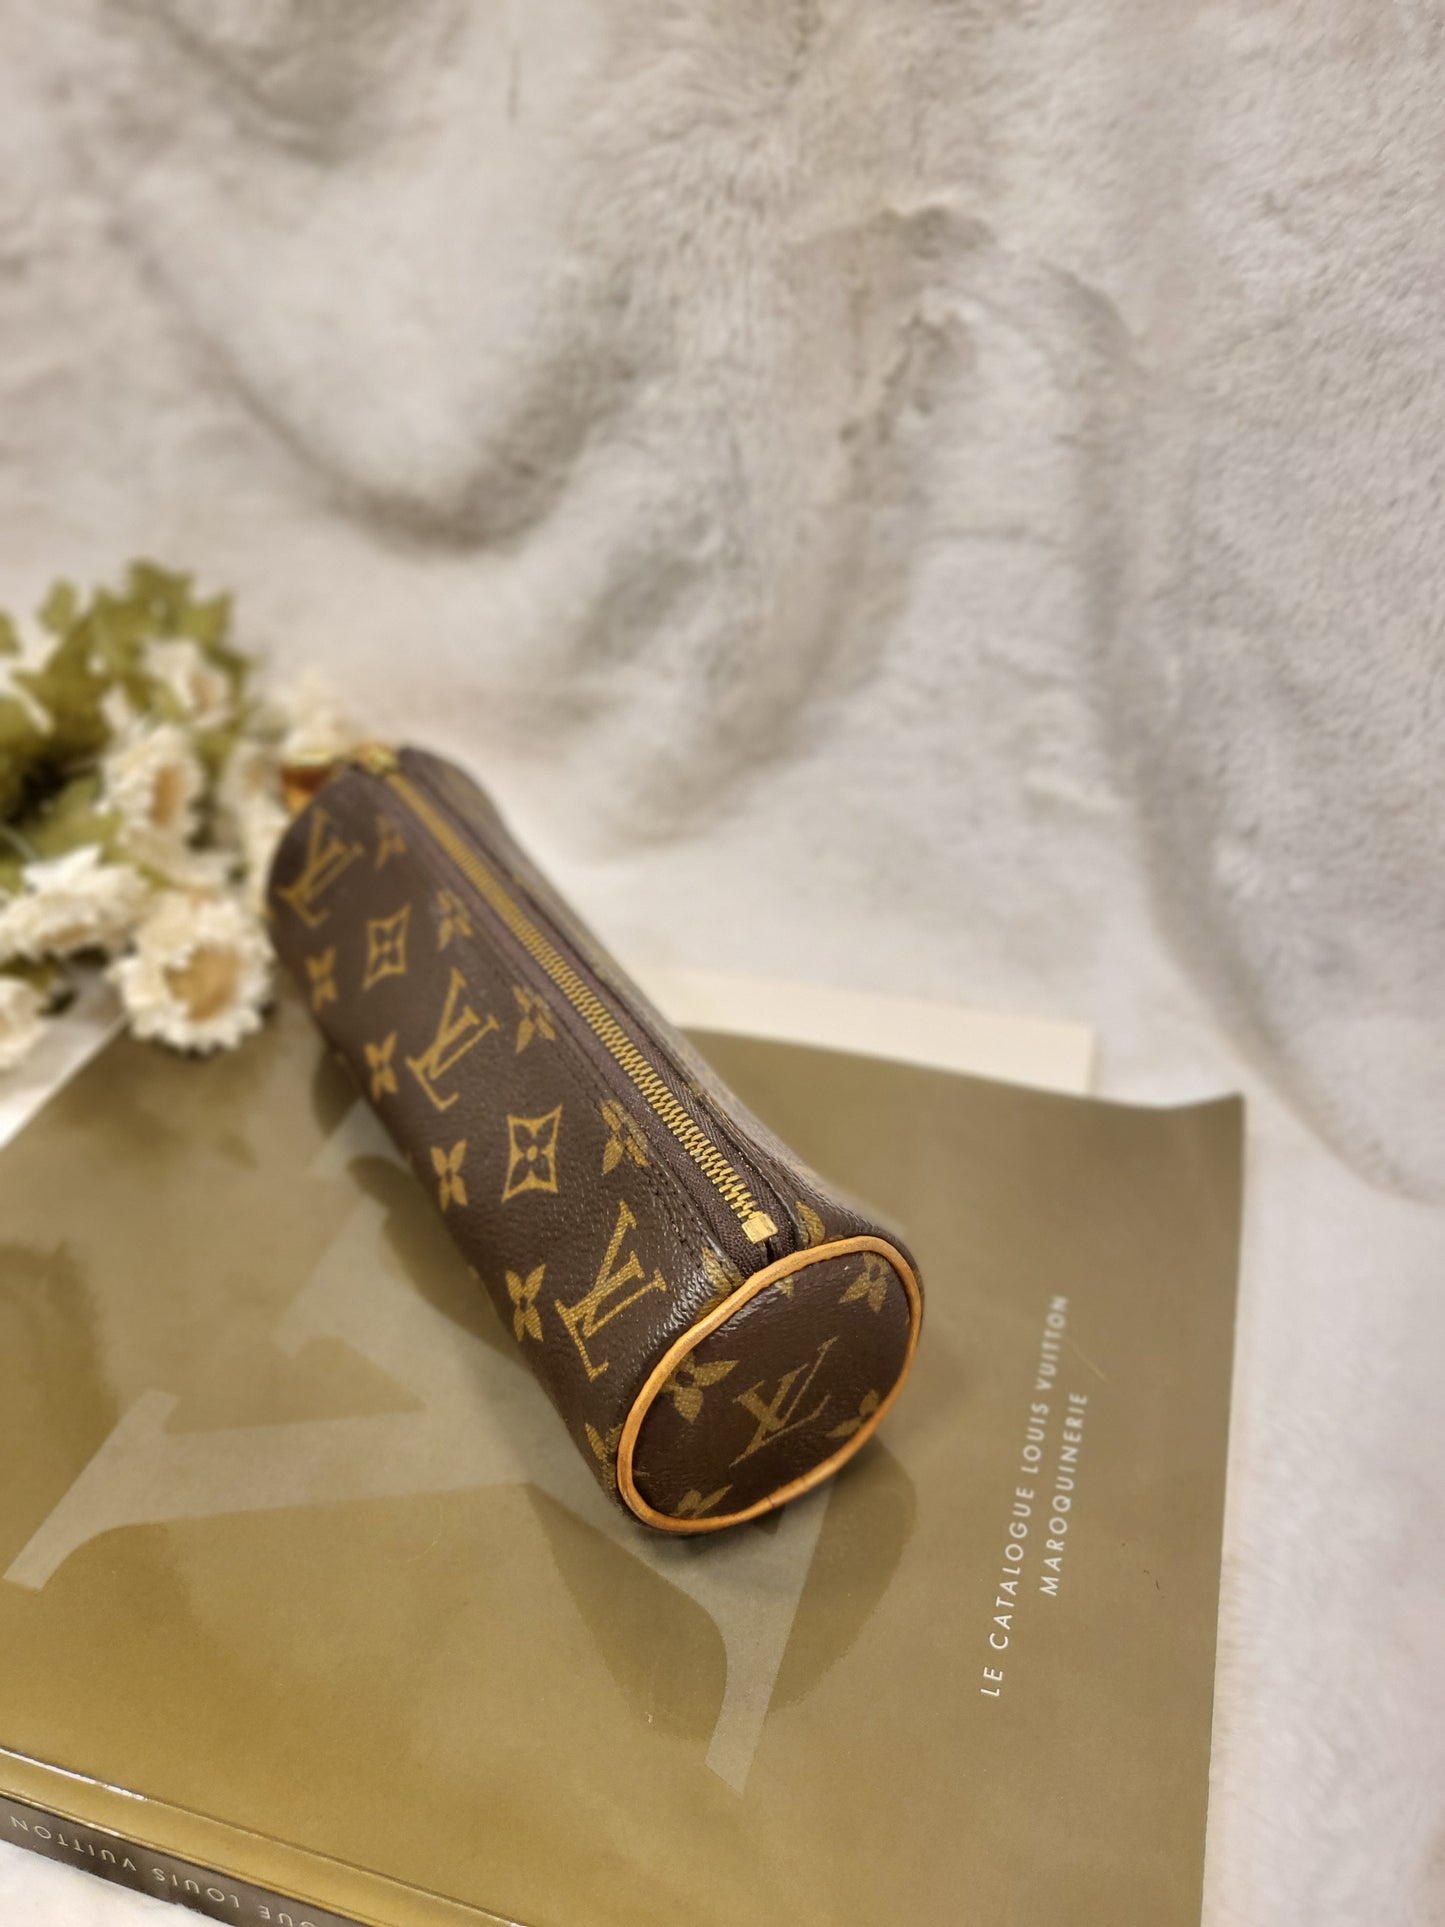 Authentic pre-owned Louis Vuitton Trousse Ronde makeup case